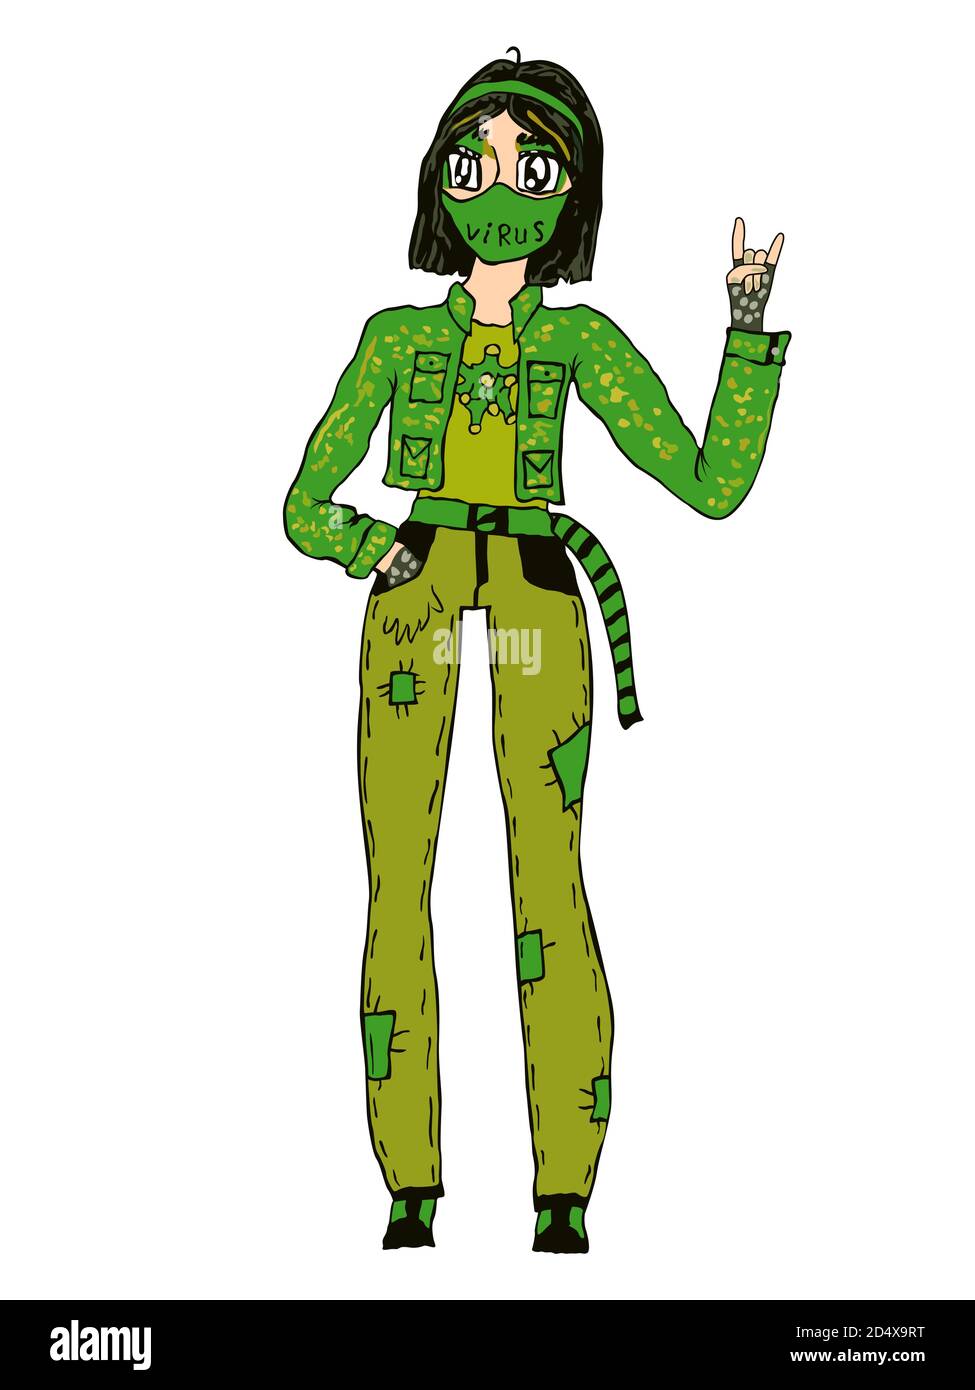 Une jeune fille de dessin animé en masque de protection et en vêtements verts symbolise la lutte avec Covid-19, vecteur fait comme dessin d'enfant Illustration de Vecteur